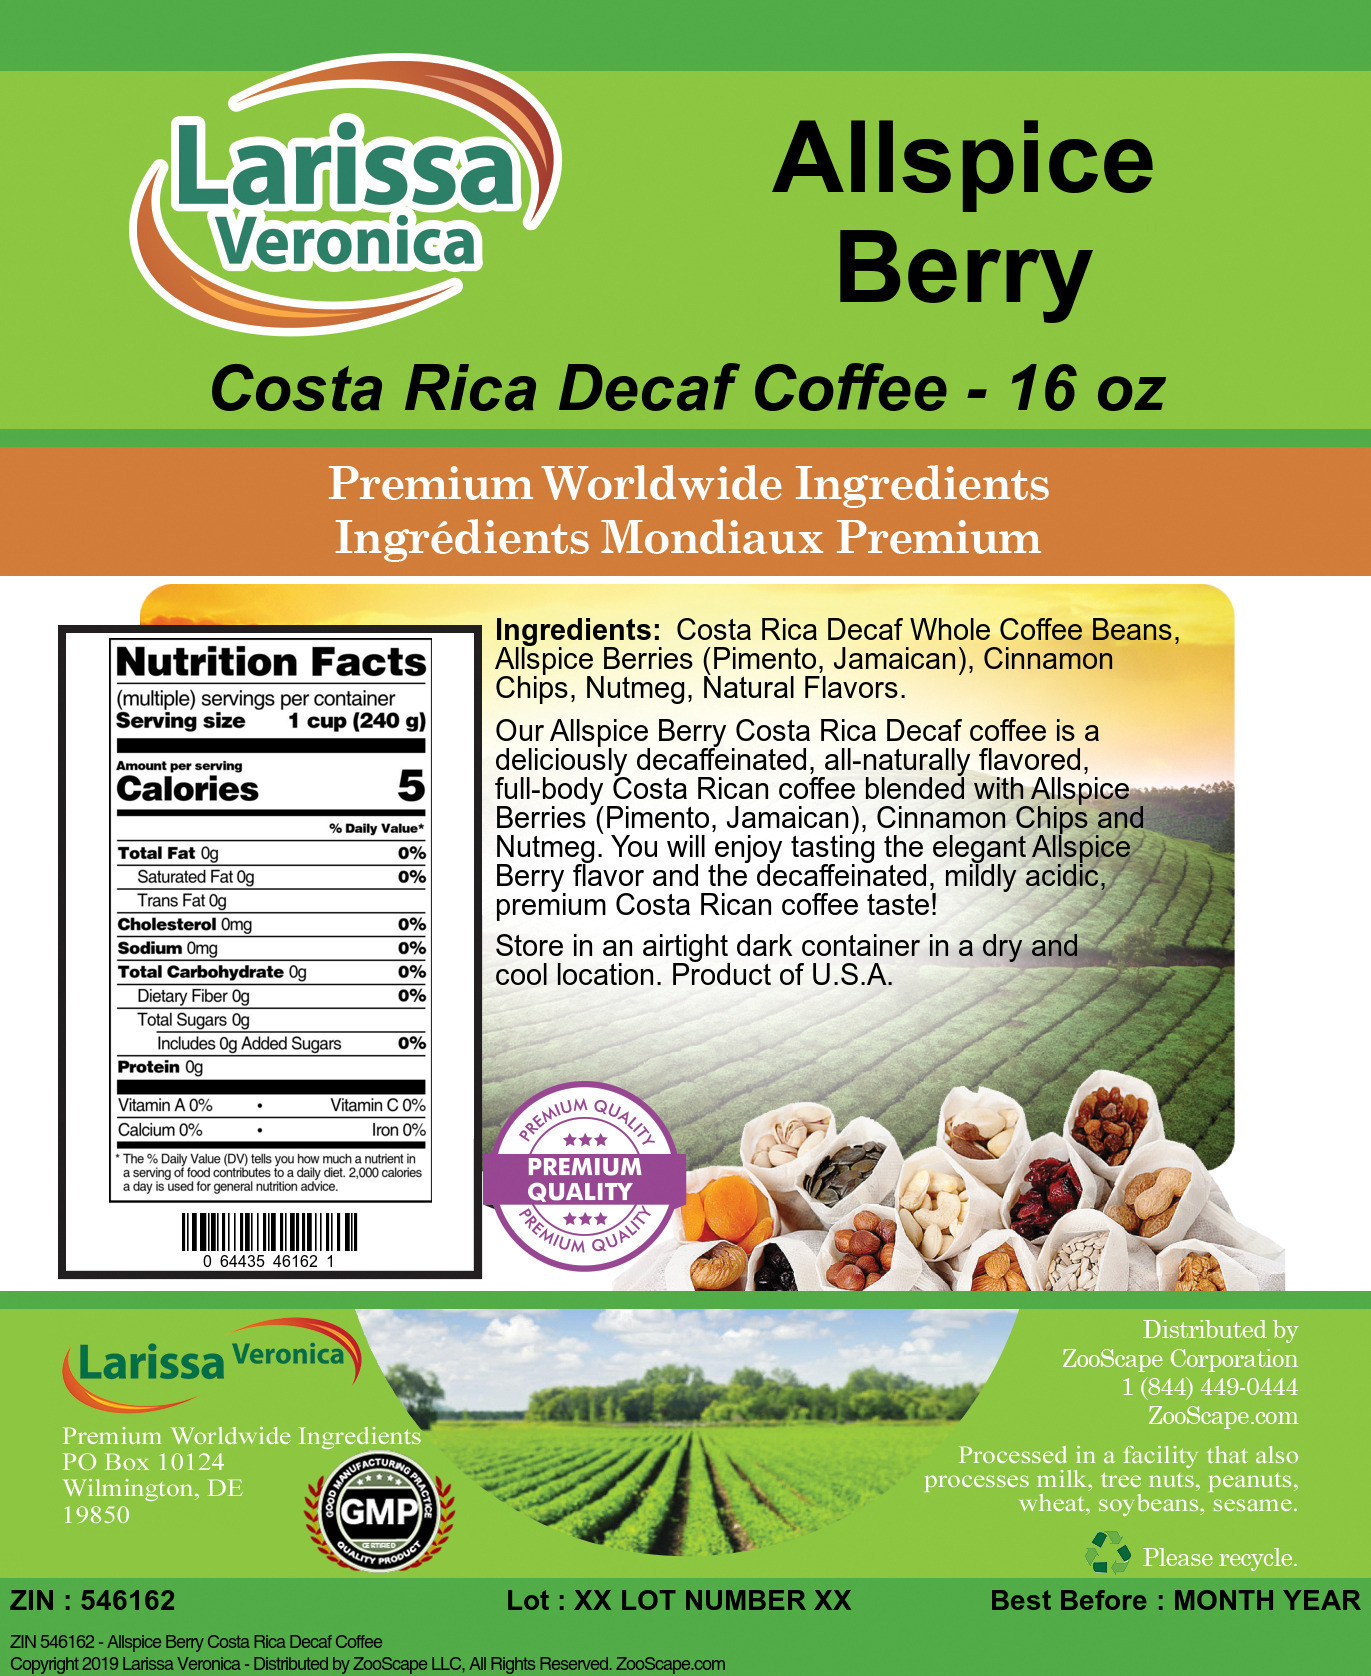 Allspice Berry Costa Rica Decaf Coffee - Label